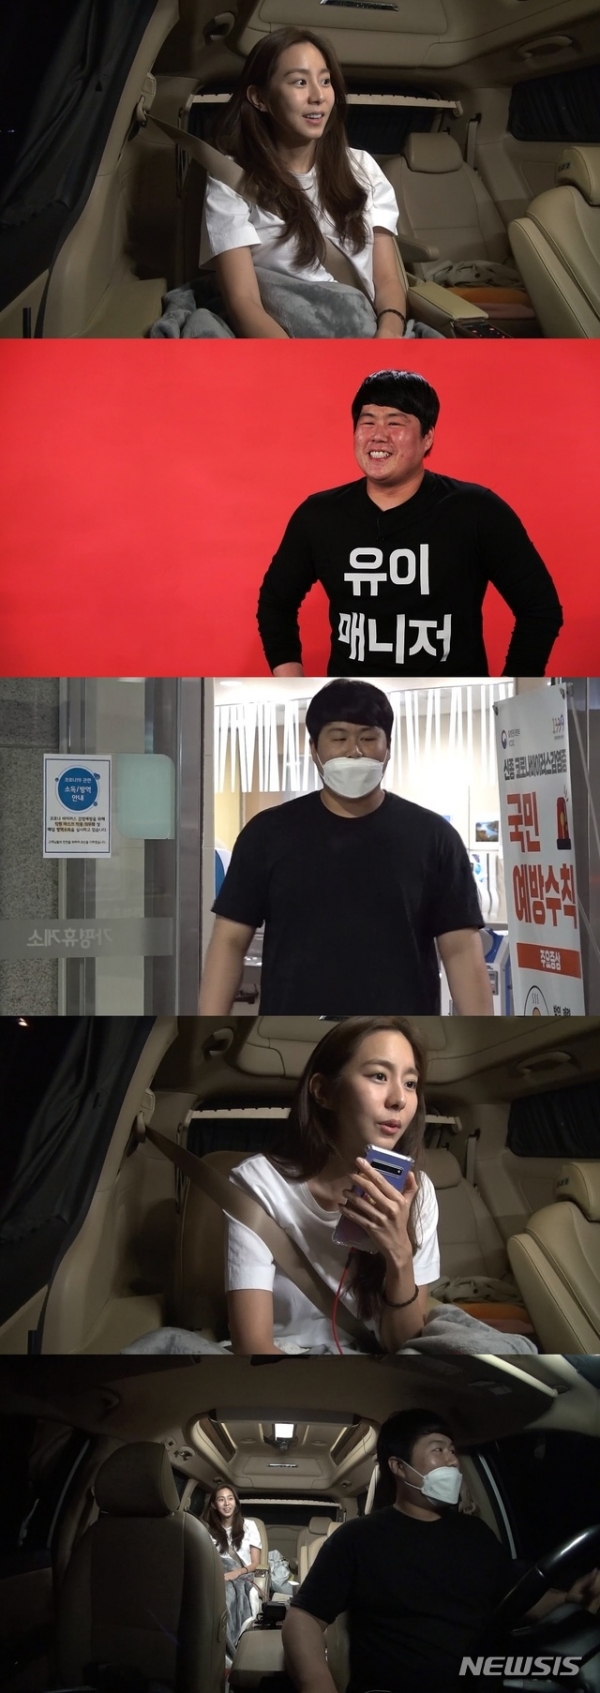 오는 8월 1일 방송되는 MBC '전지적 참견 시점'(이하 '전참시')에 가수 겸 배우 유이와 매니저가 출연한다. (사진 = MBC '전참시')